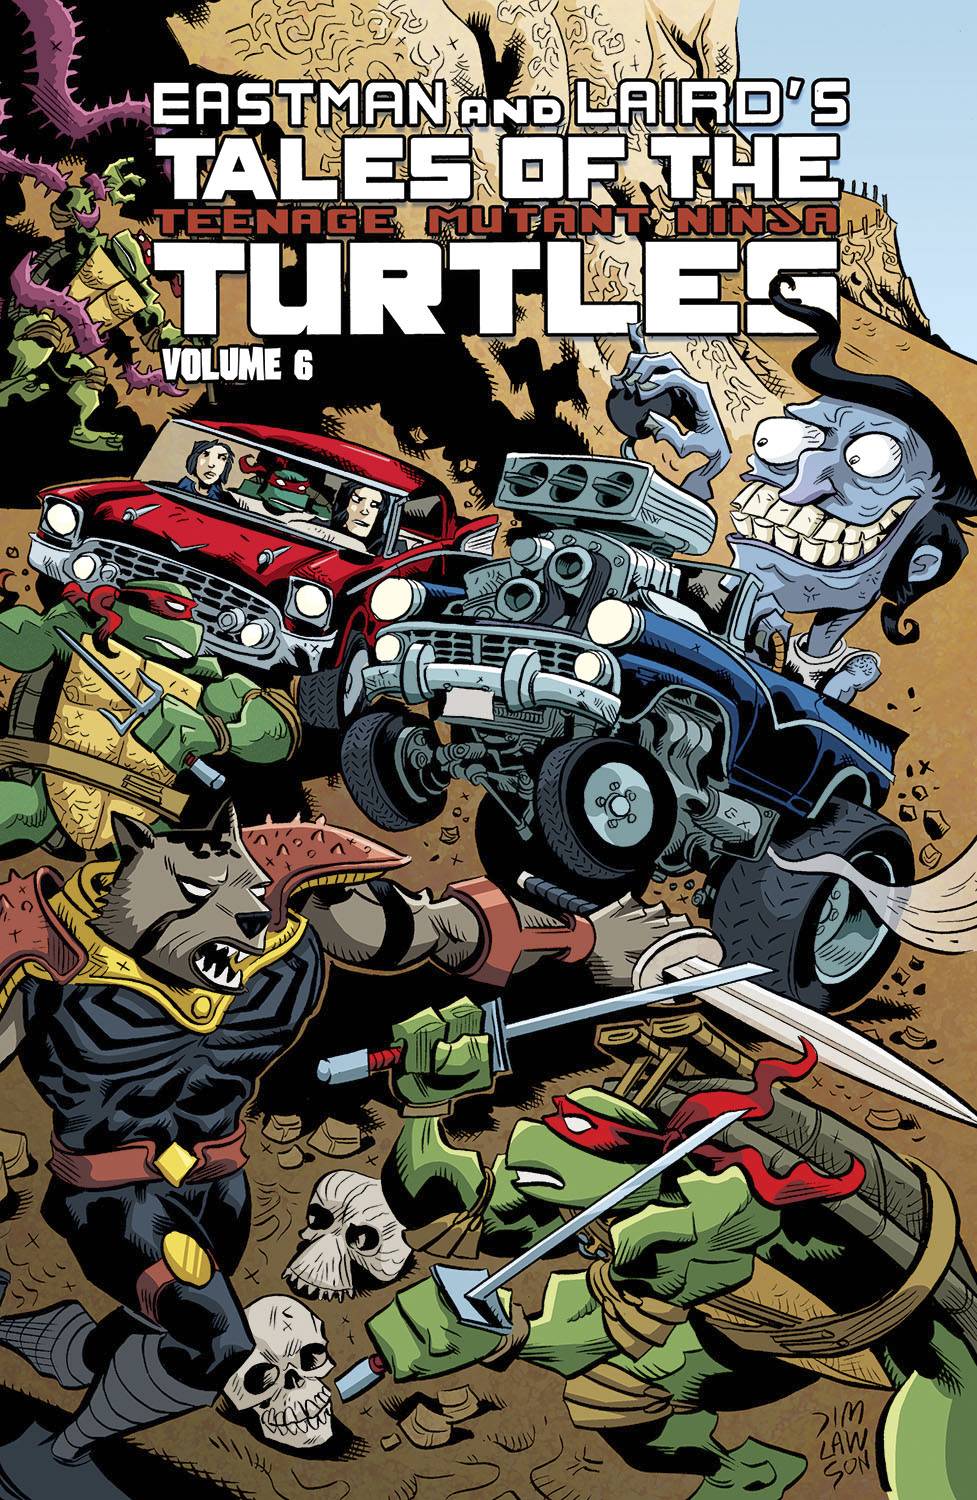 Tales of the Teenage Mutant Ninja Turtles Graphic Novel Volume 6